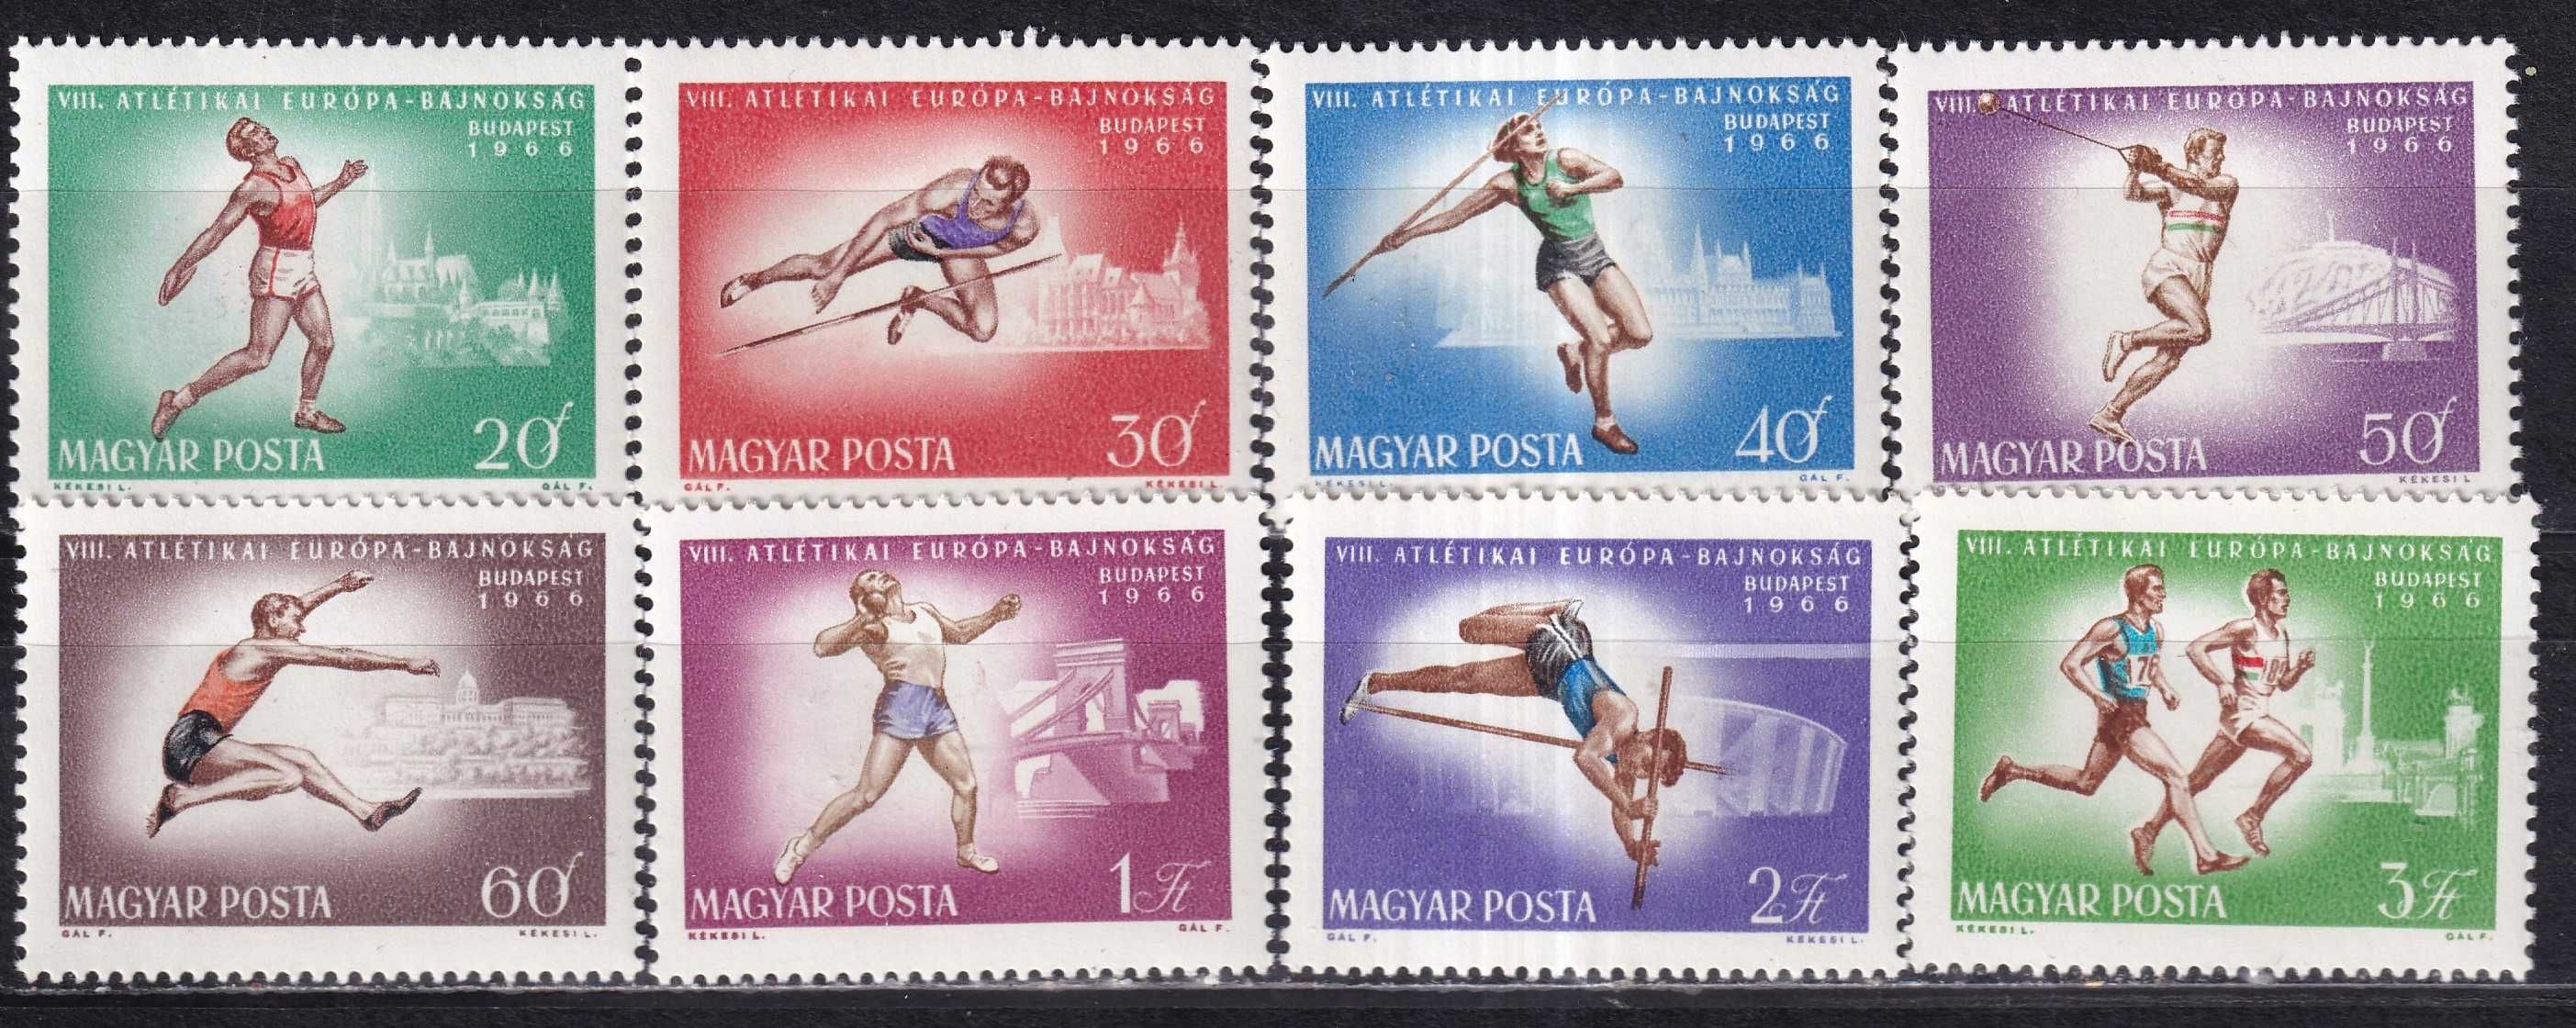 Węgry 1966 cena 3,90 zł kat.5,75€ - sport